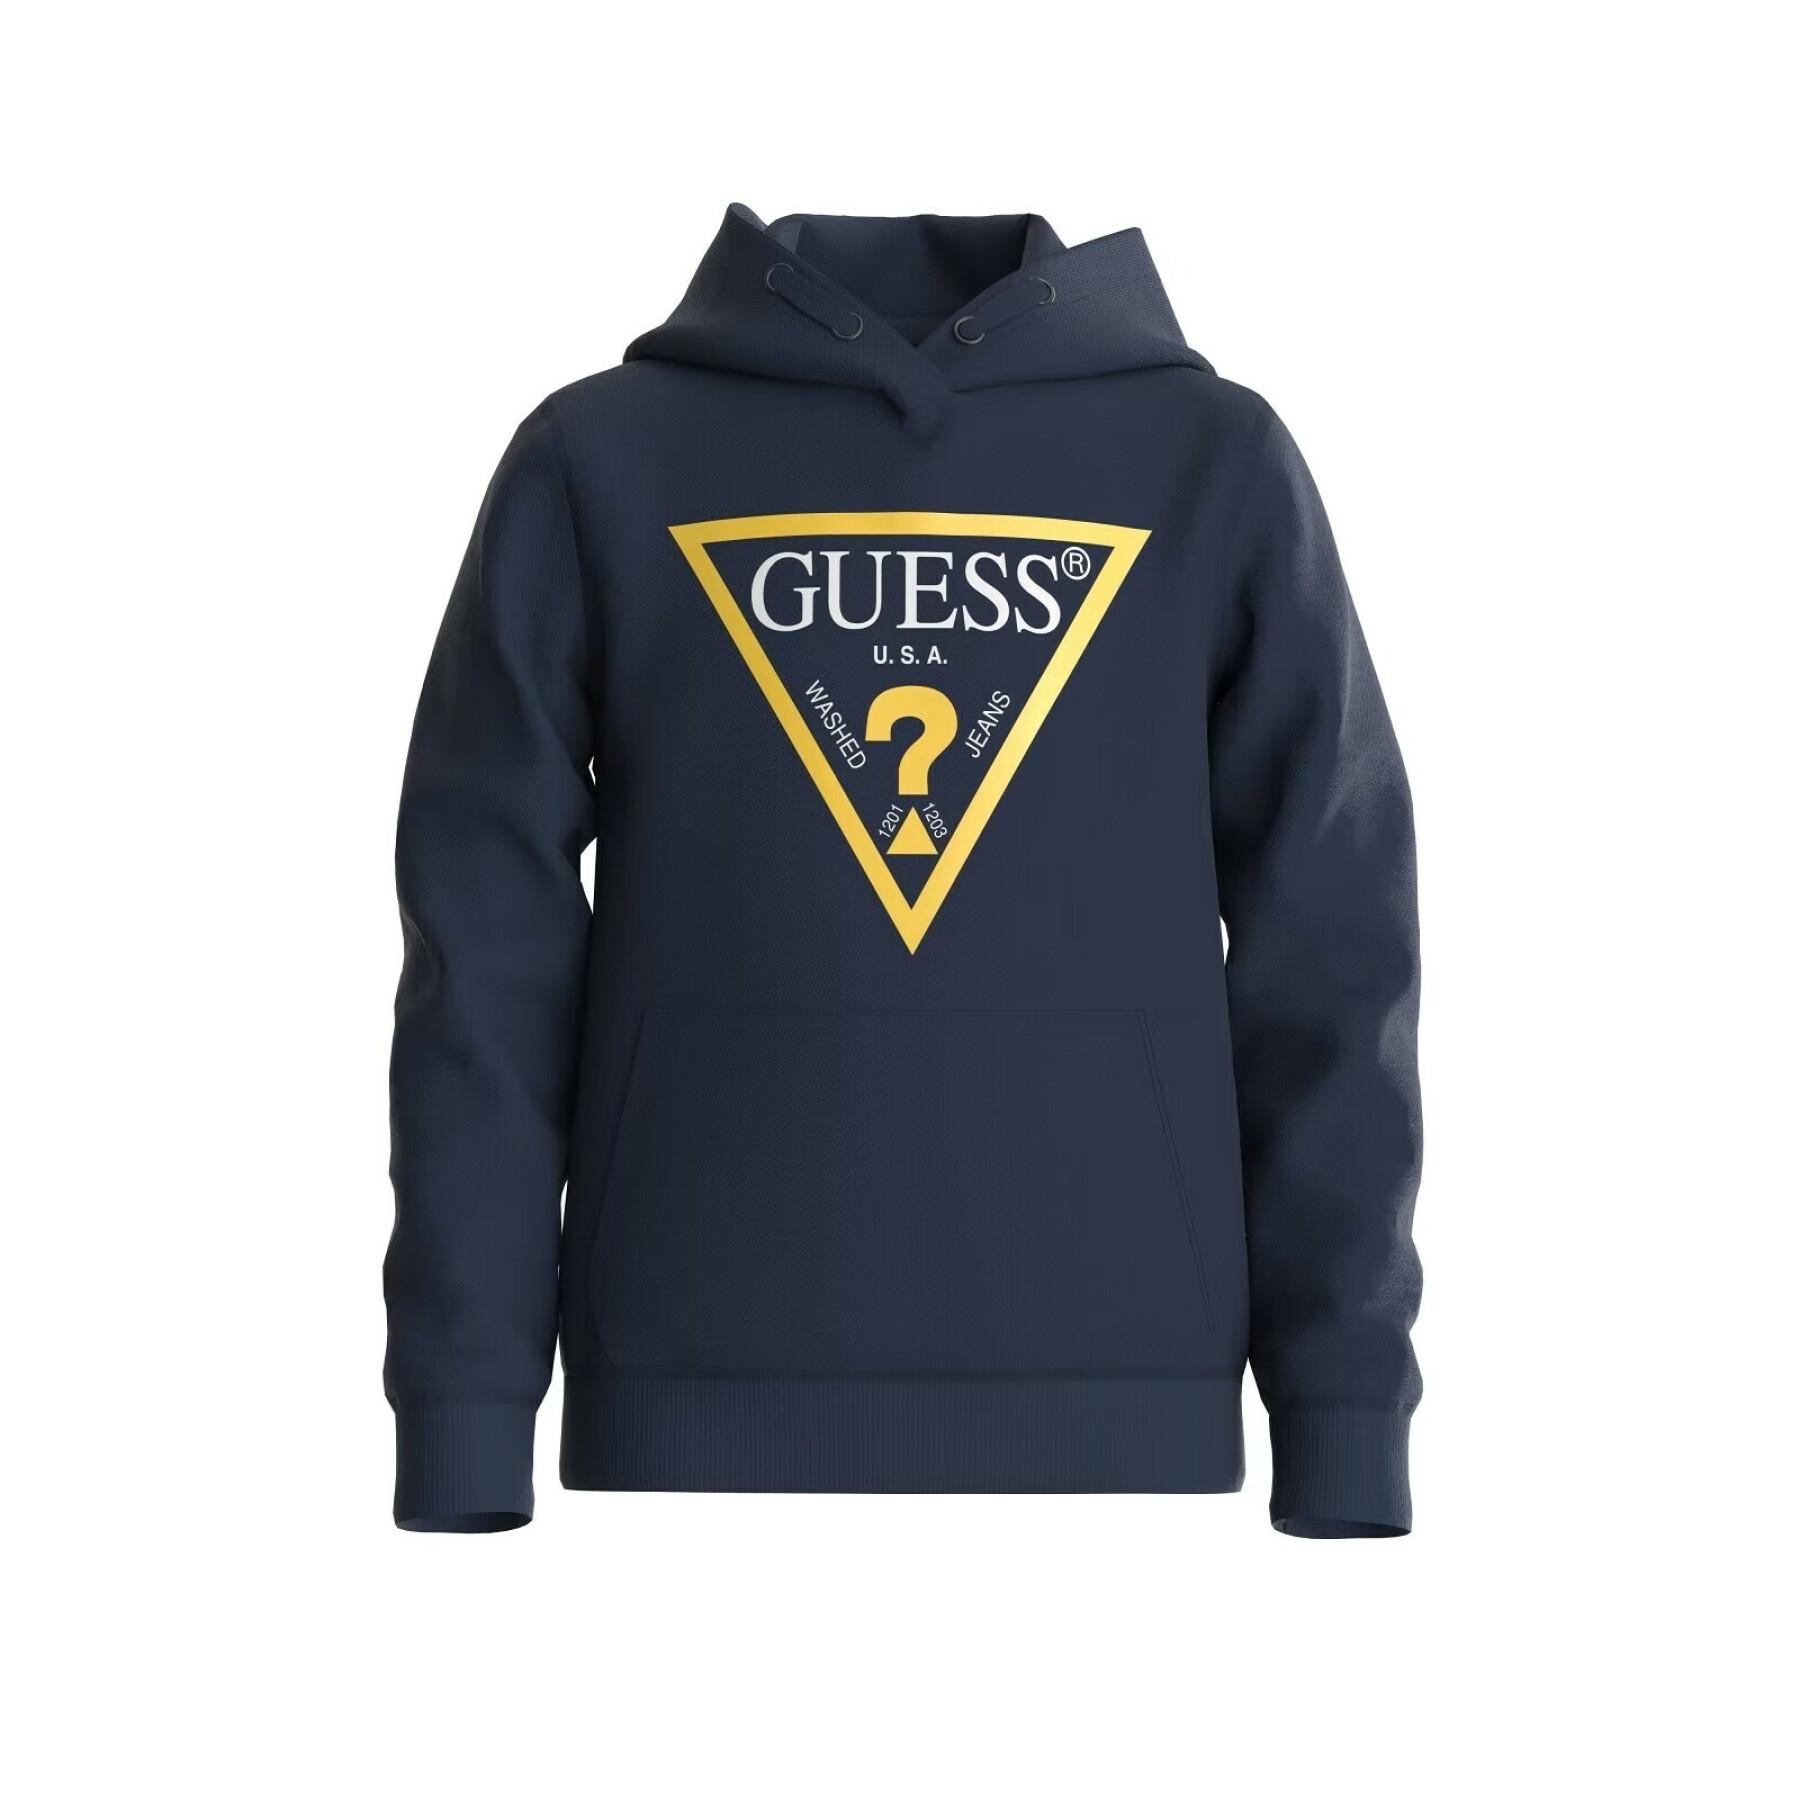 Kinder sweatshirt met capuchon Guess Core